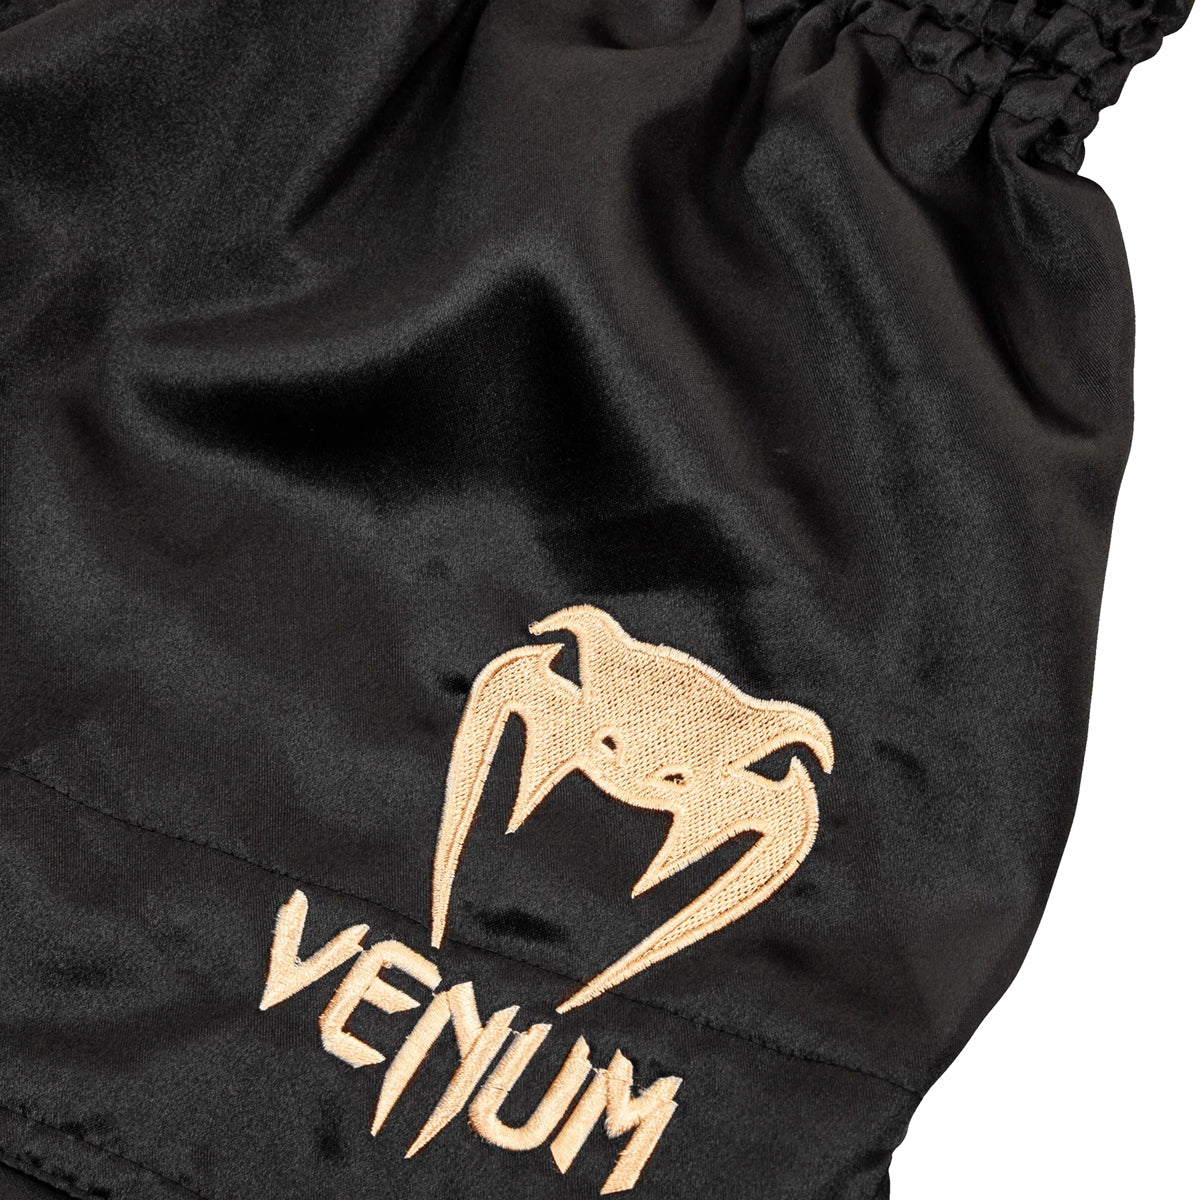 Venum Classic Muay Thai Shorts - Black/Gold Venum